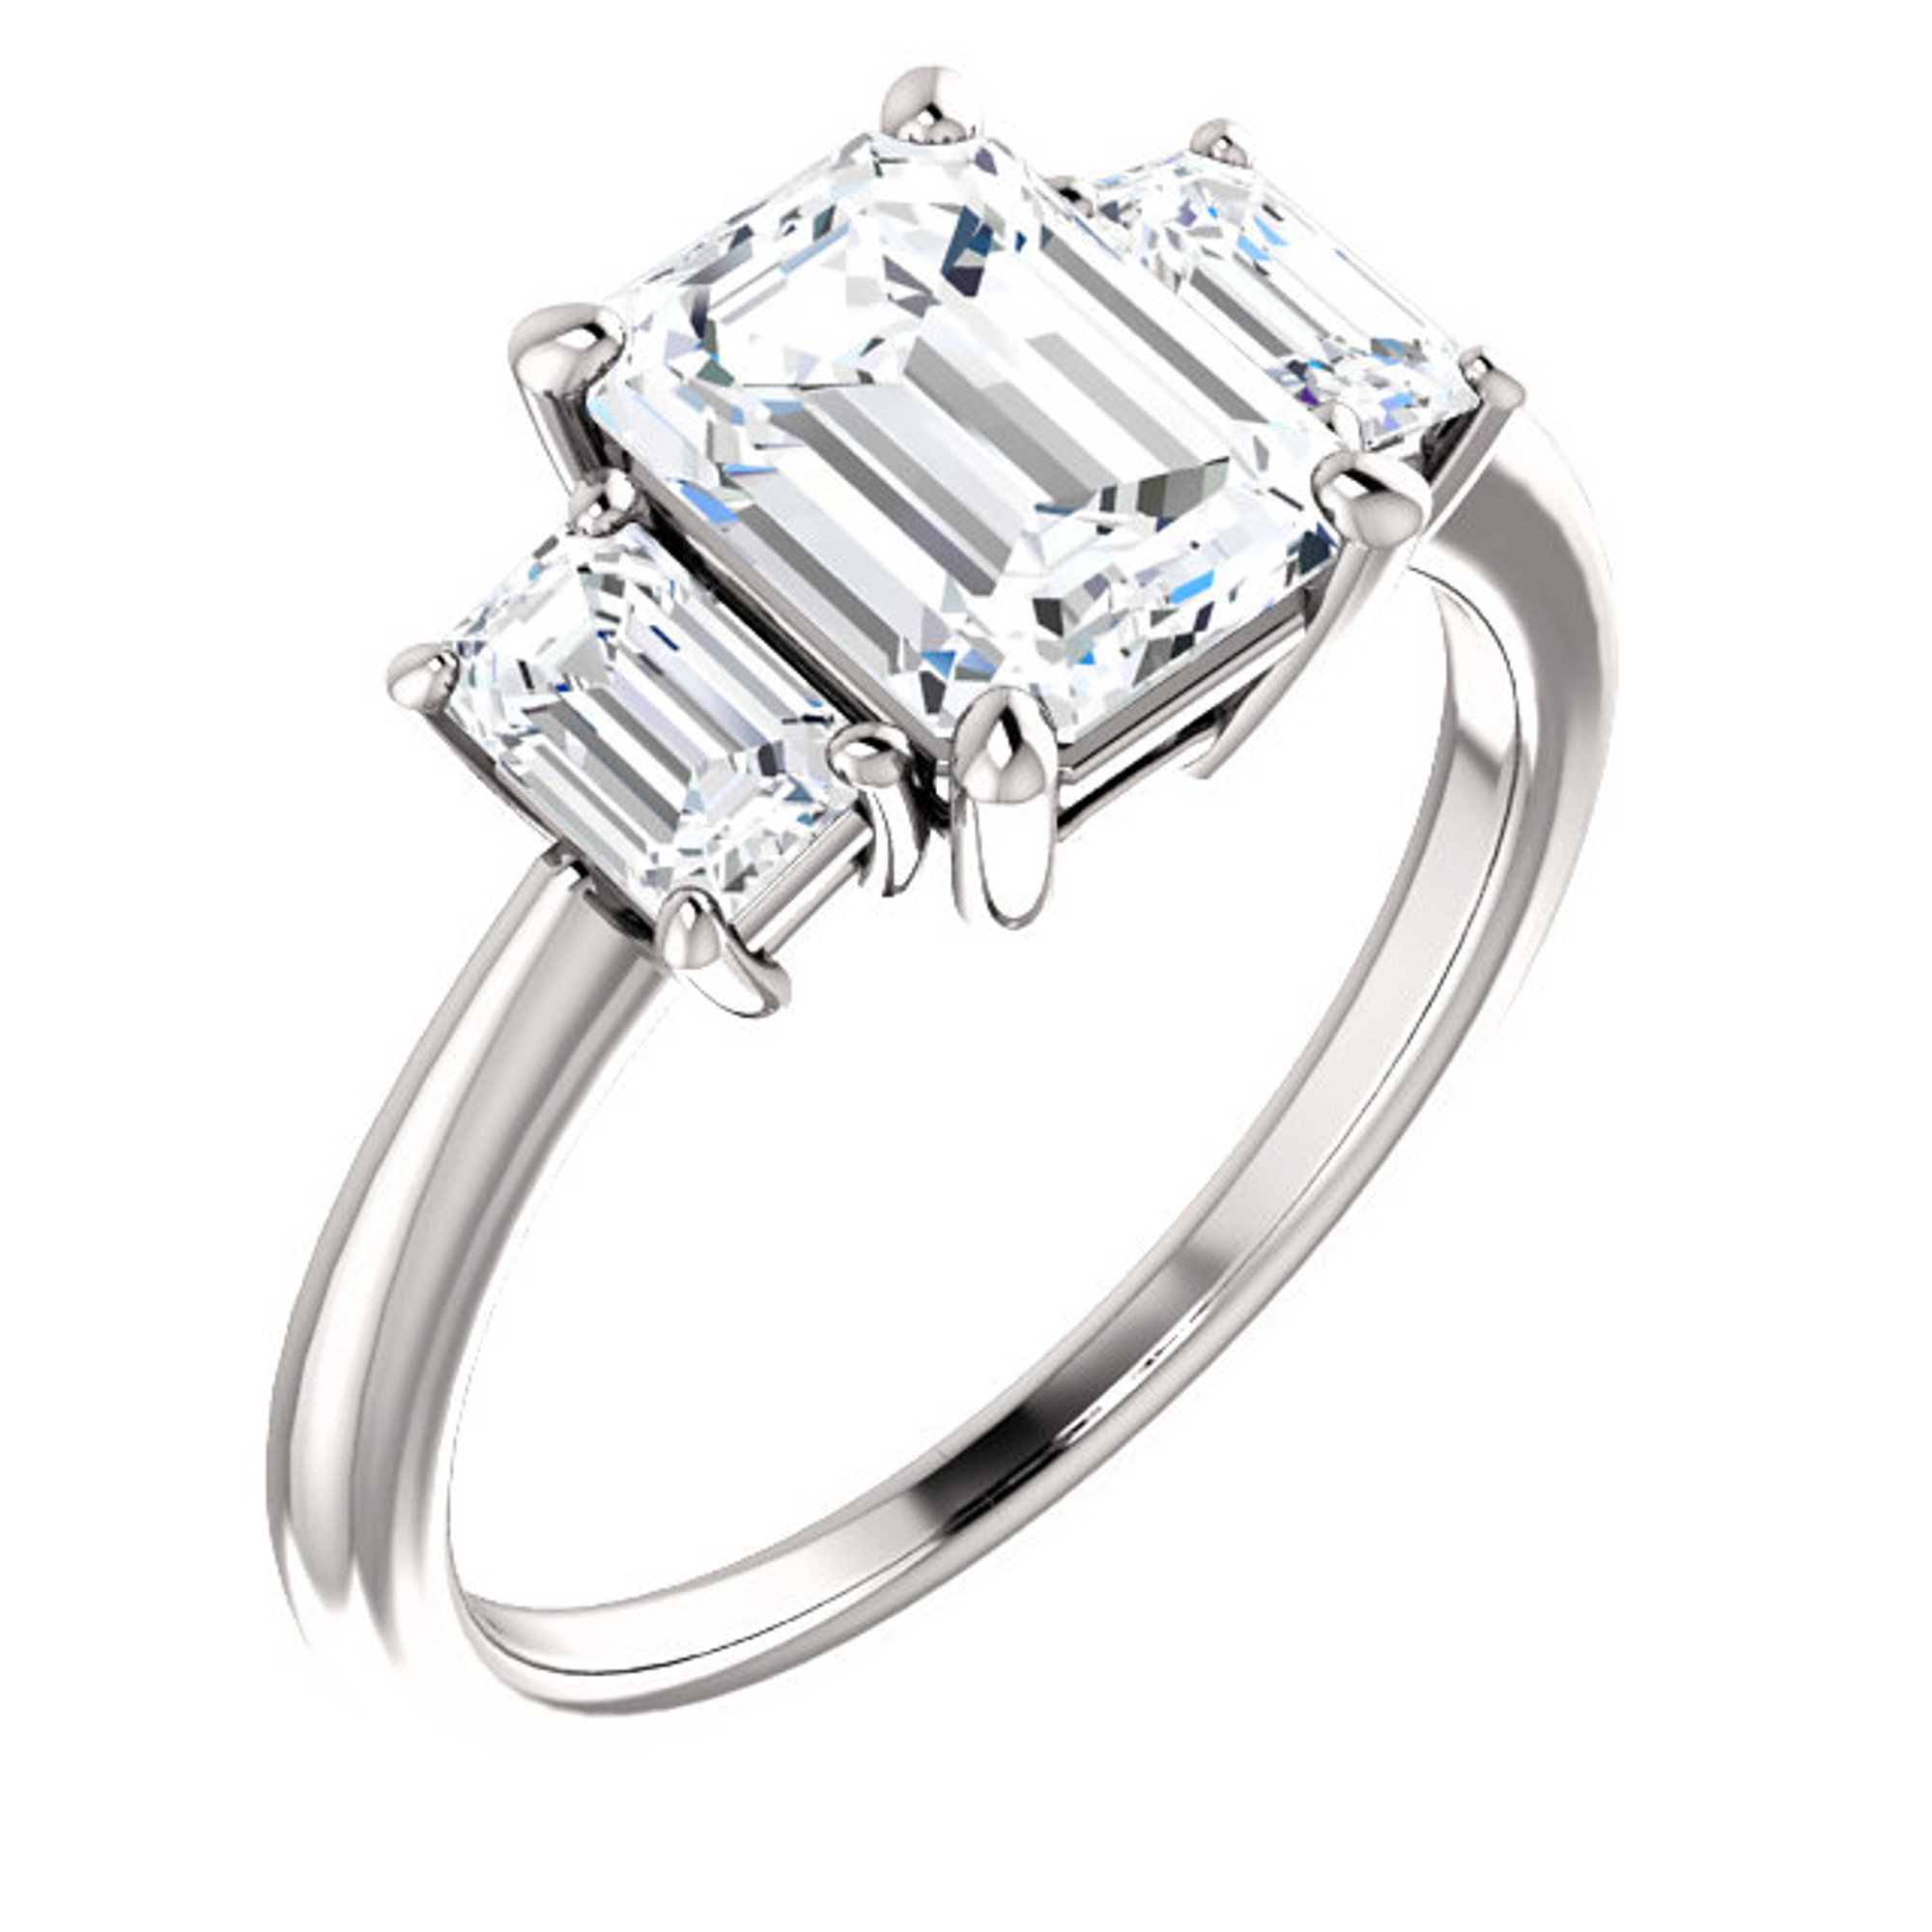 Stuller - Hammered Design - Tungsten - 8.30 mm - Wedding Band Ring - Size  11 | eBay